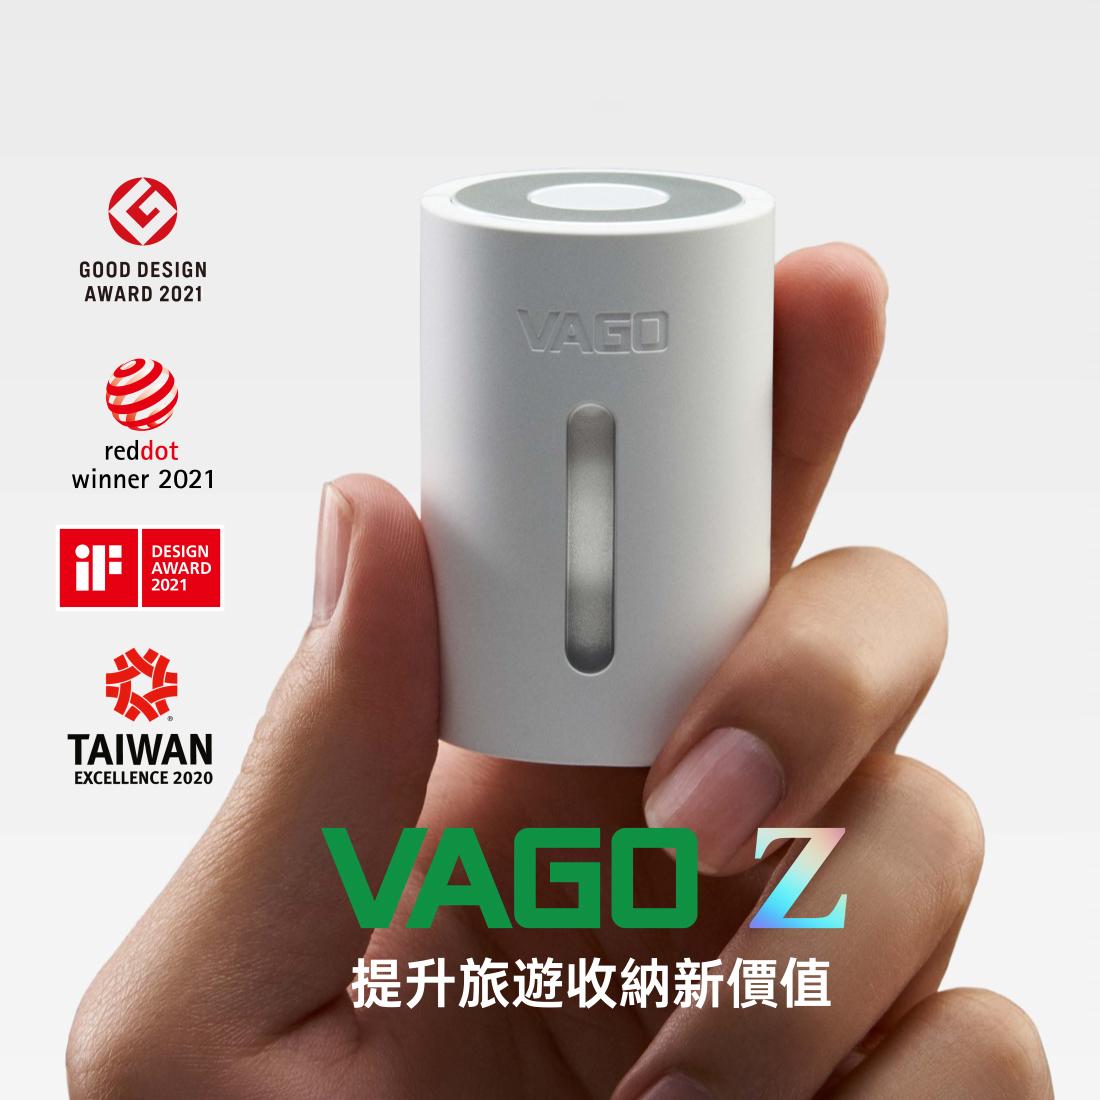 新世代VAGO Z 微型真空壓縮機套裝組-粉 (內含M尺寸真空袋 X 1)